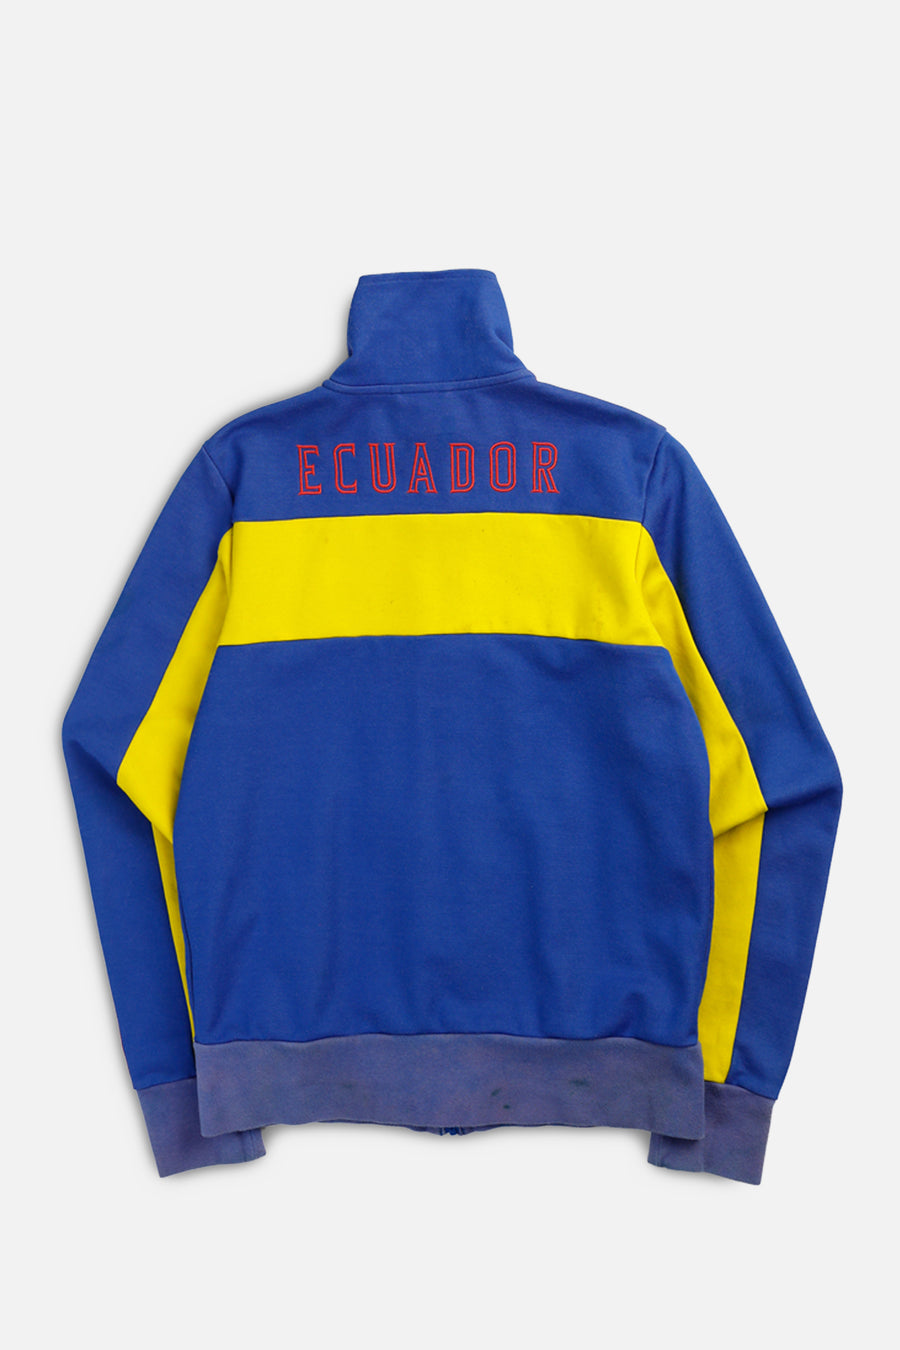 Vintage Ecuador Soccer Track Jacket - L